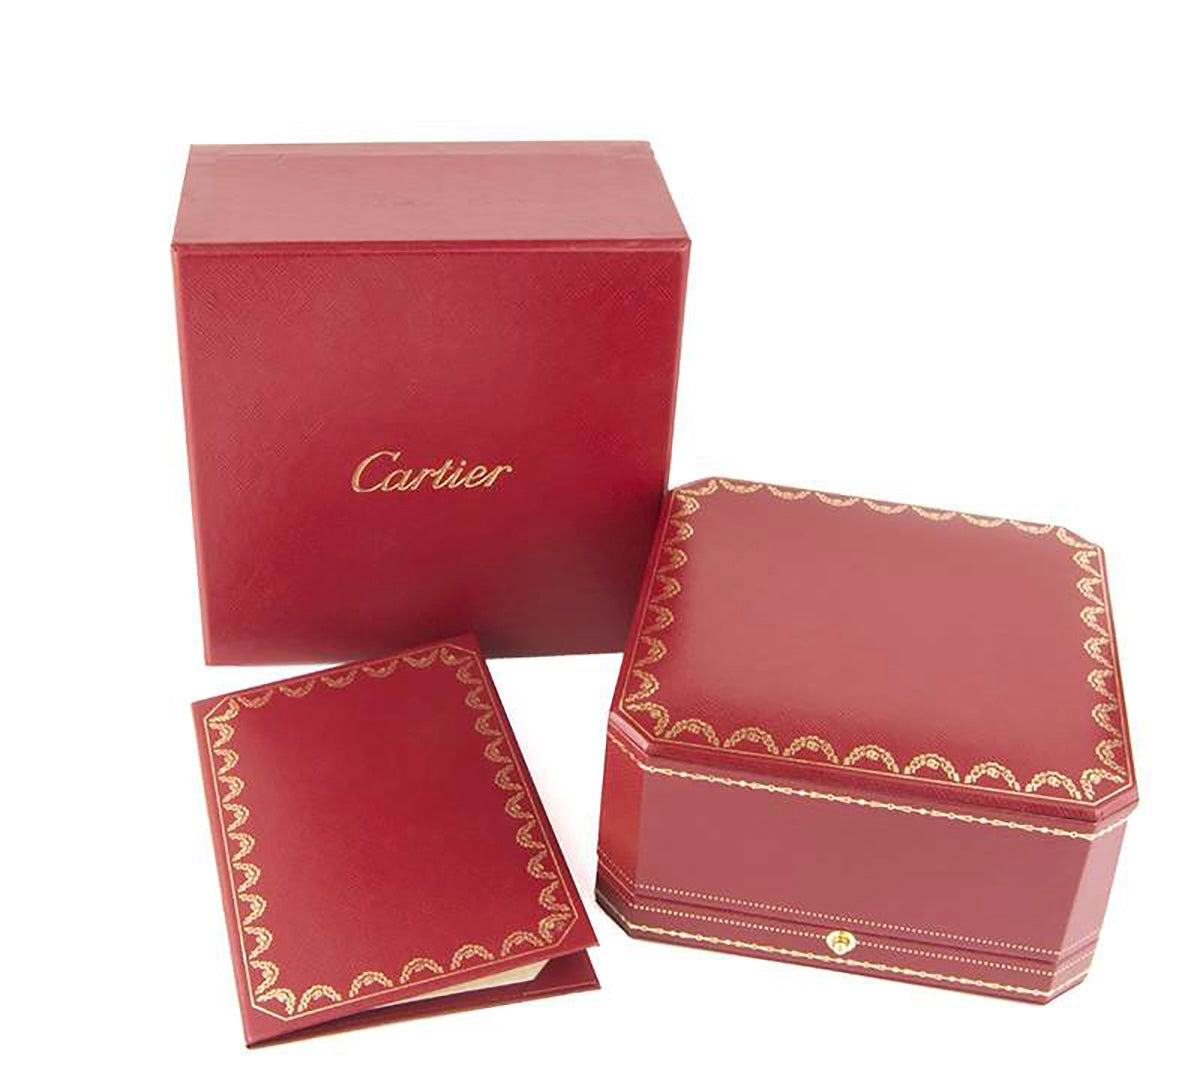 Cartier 18k White Gold Juste Un Clou Diamonds Bracelet Size 16